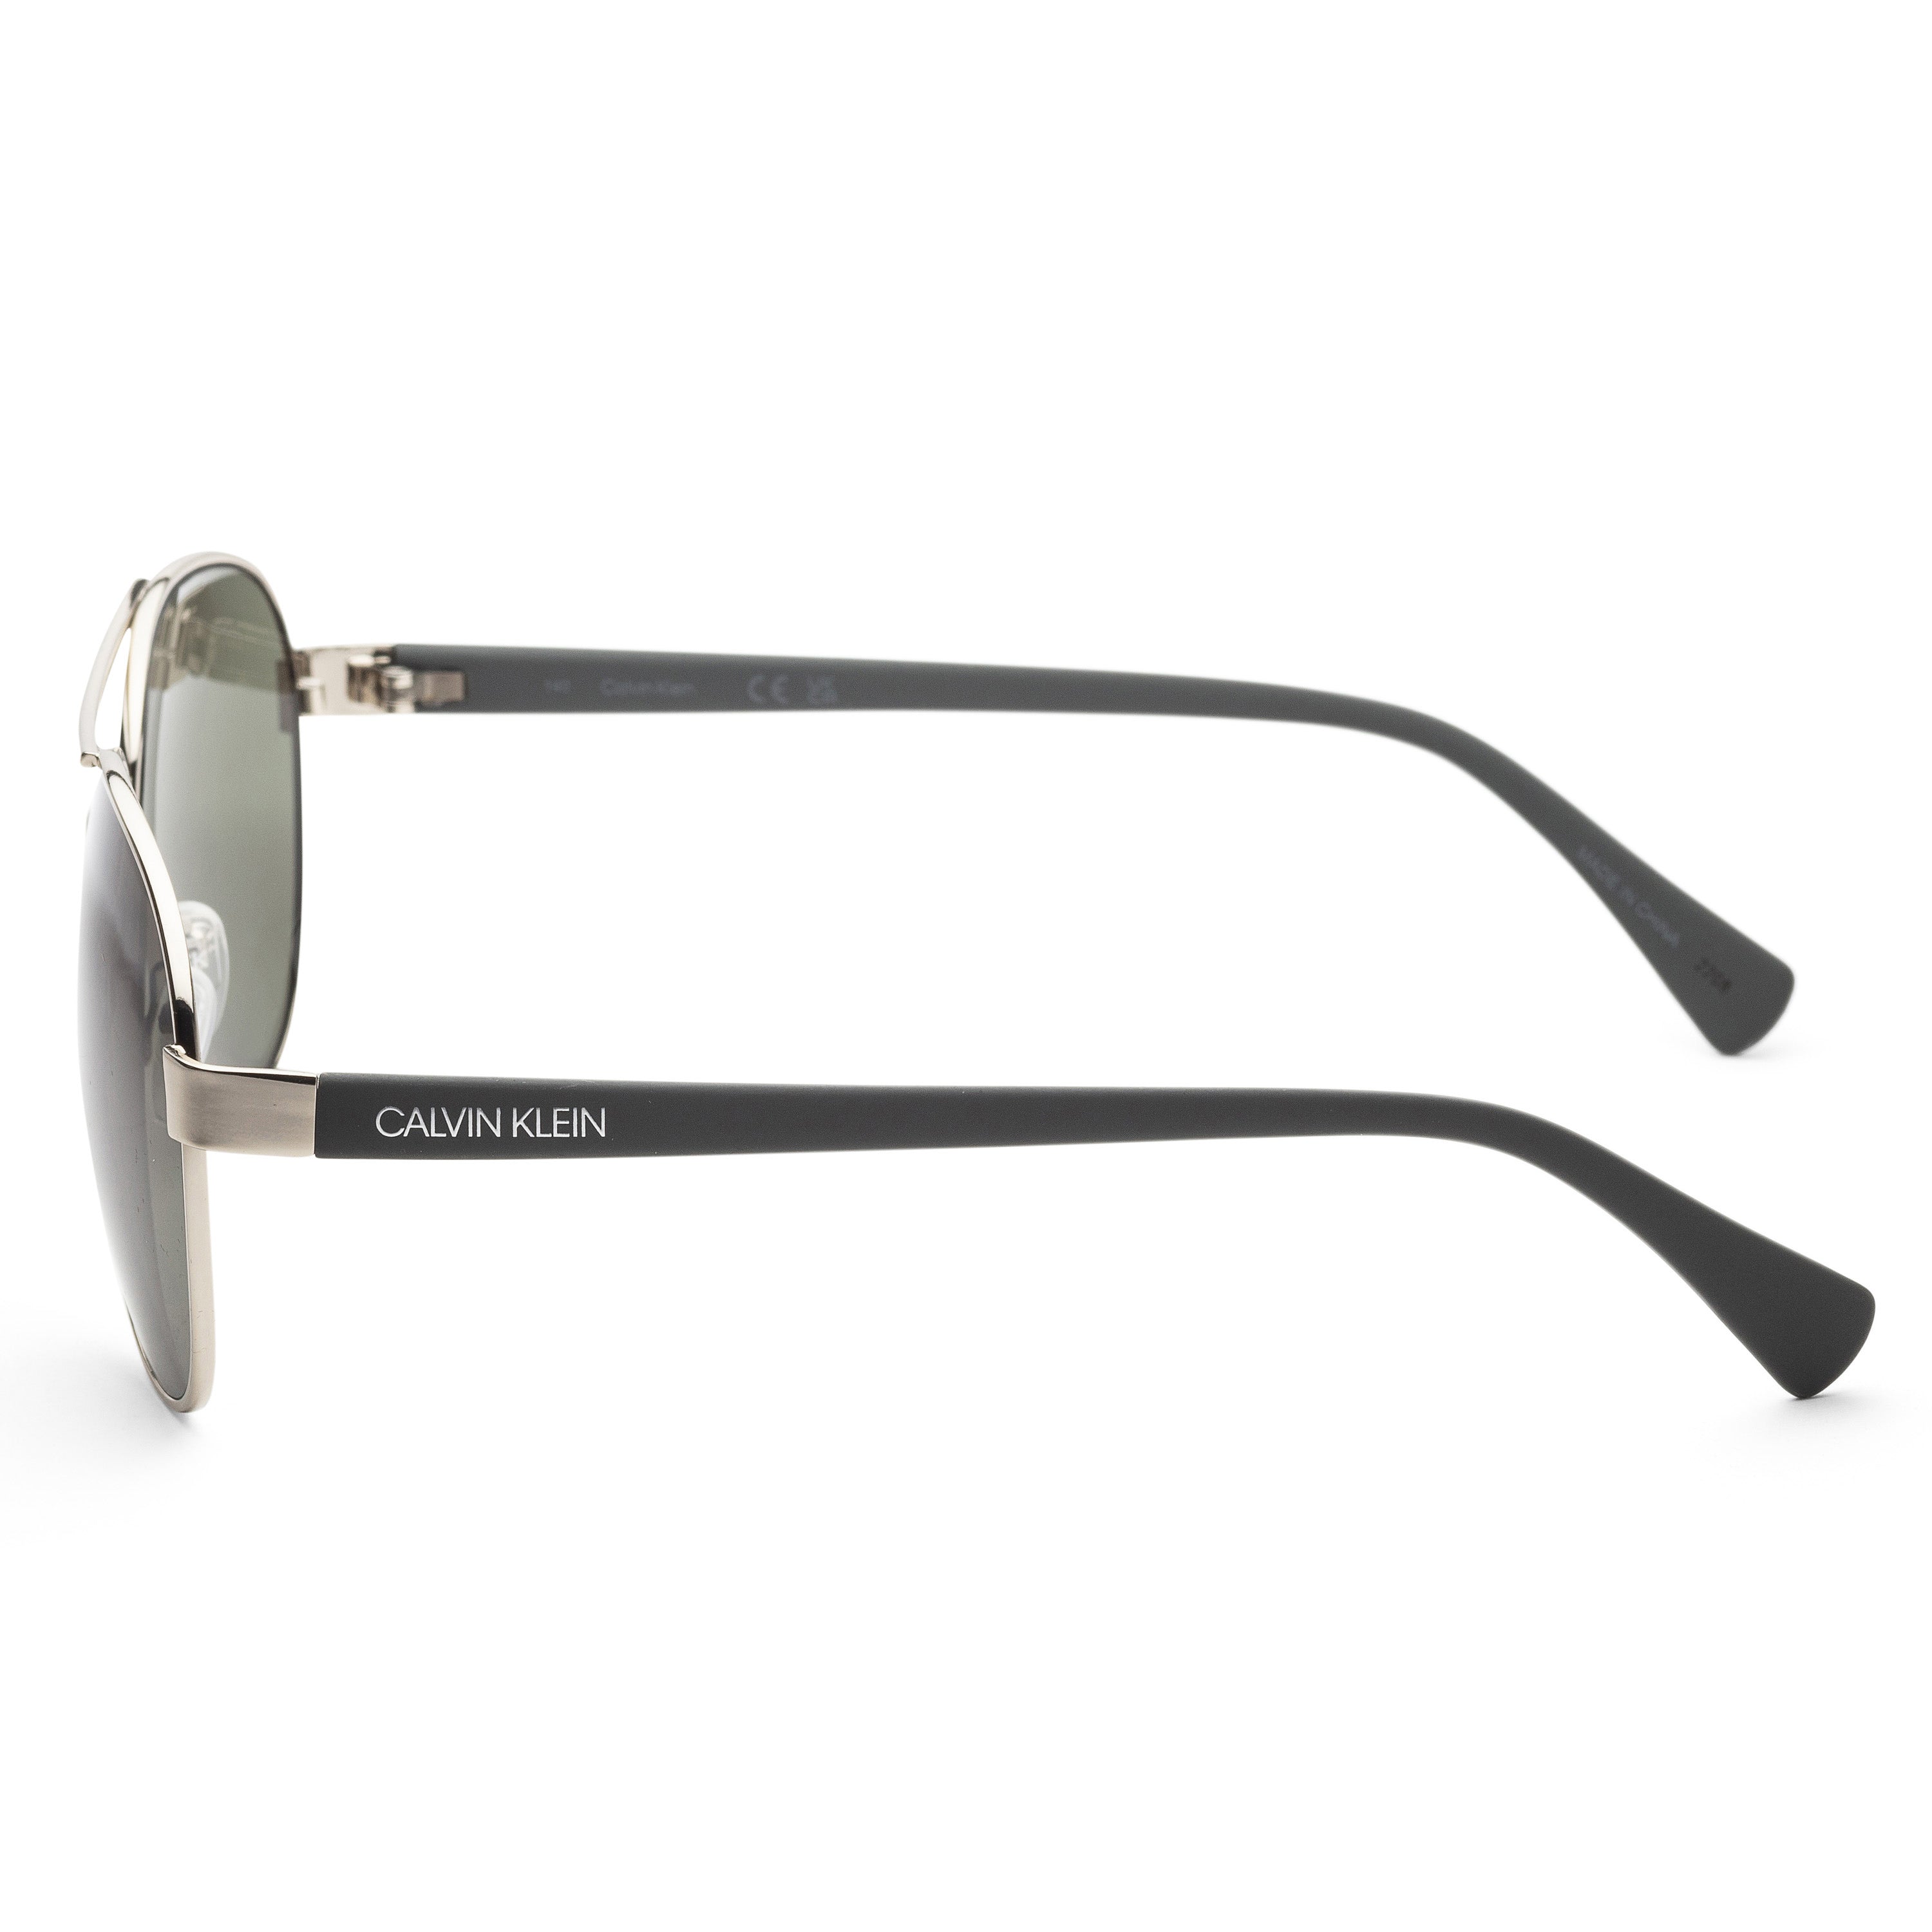 title:Calvin Klein Men's CK19316S-045 Fashion 60mm Silver Sunglasses;color:Silver